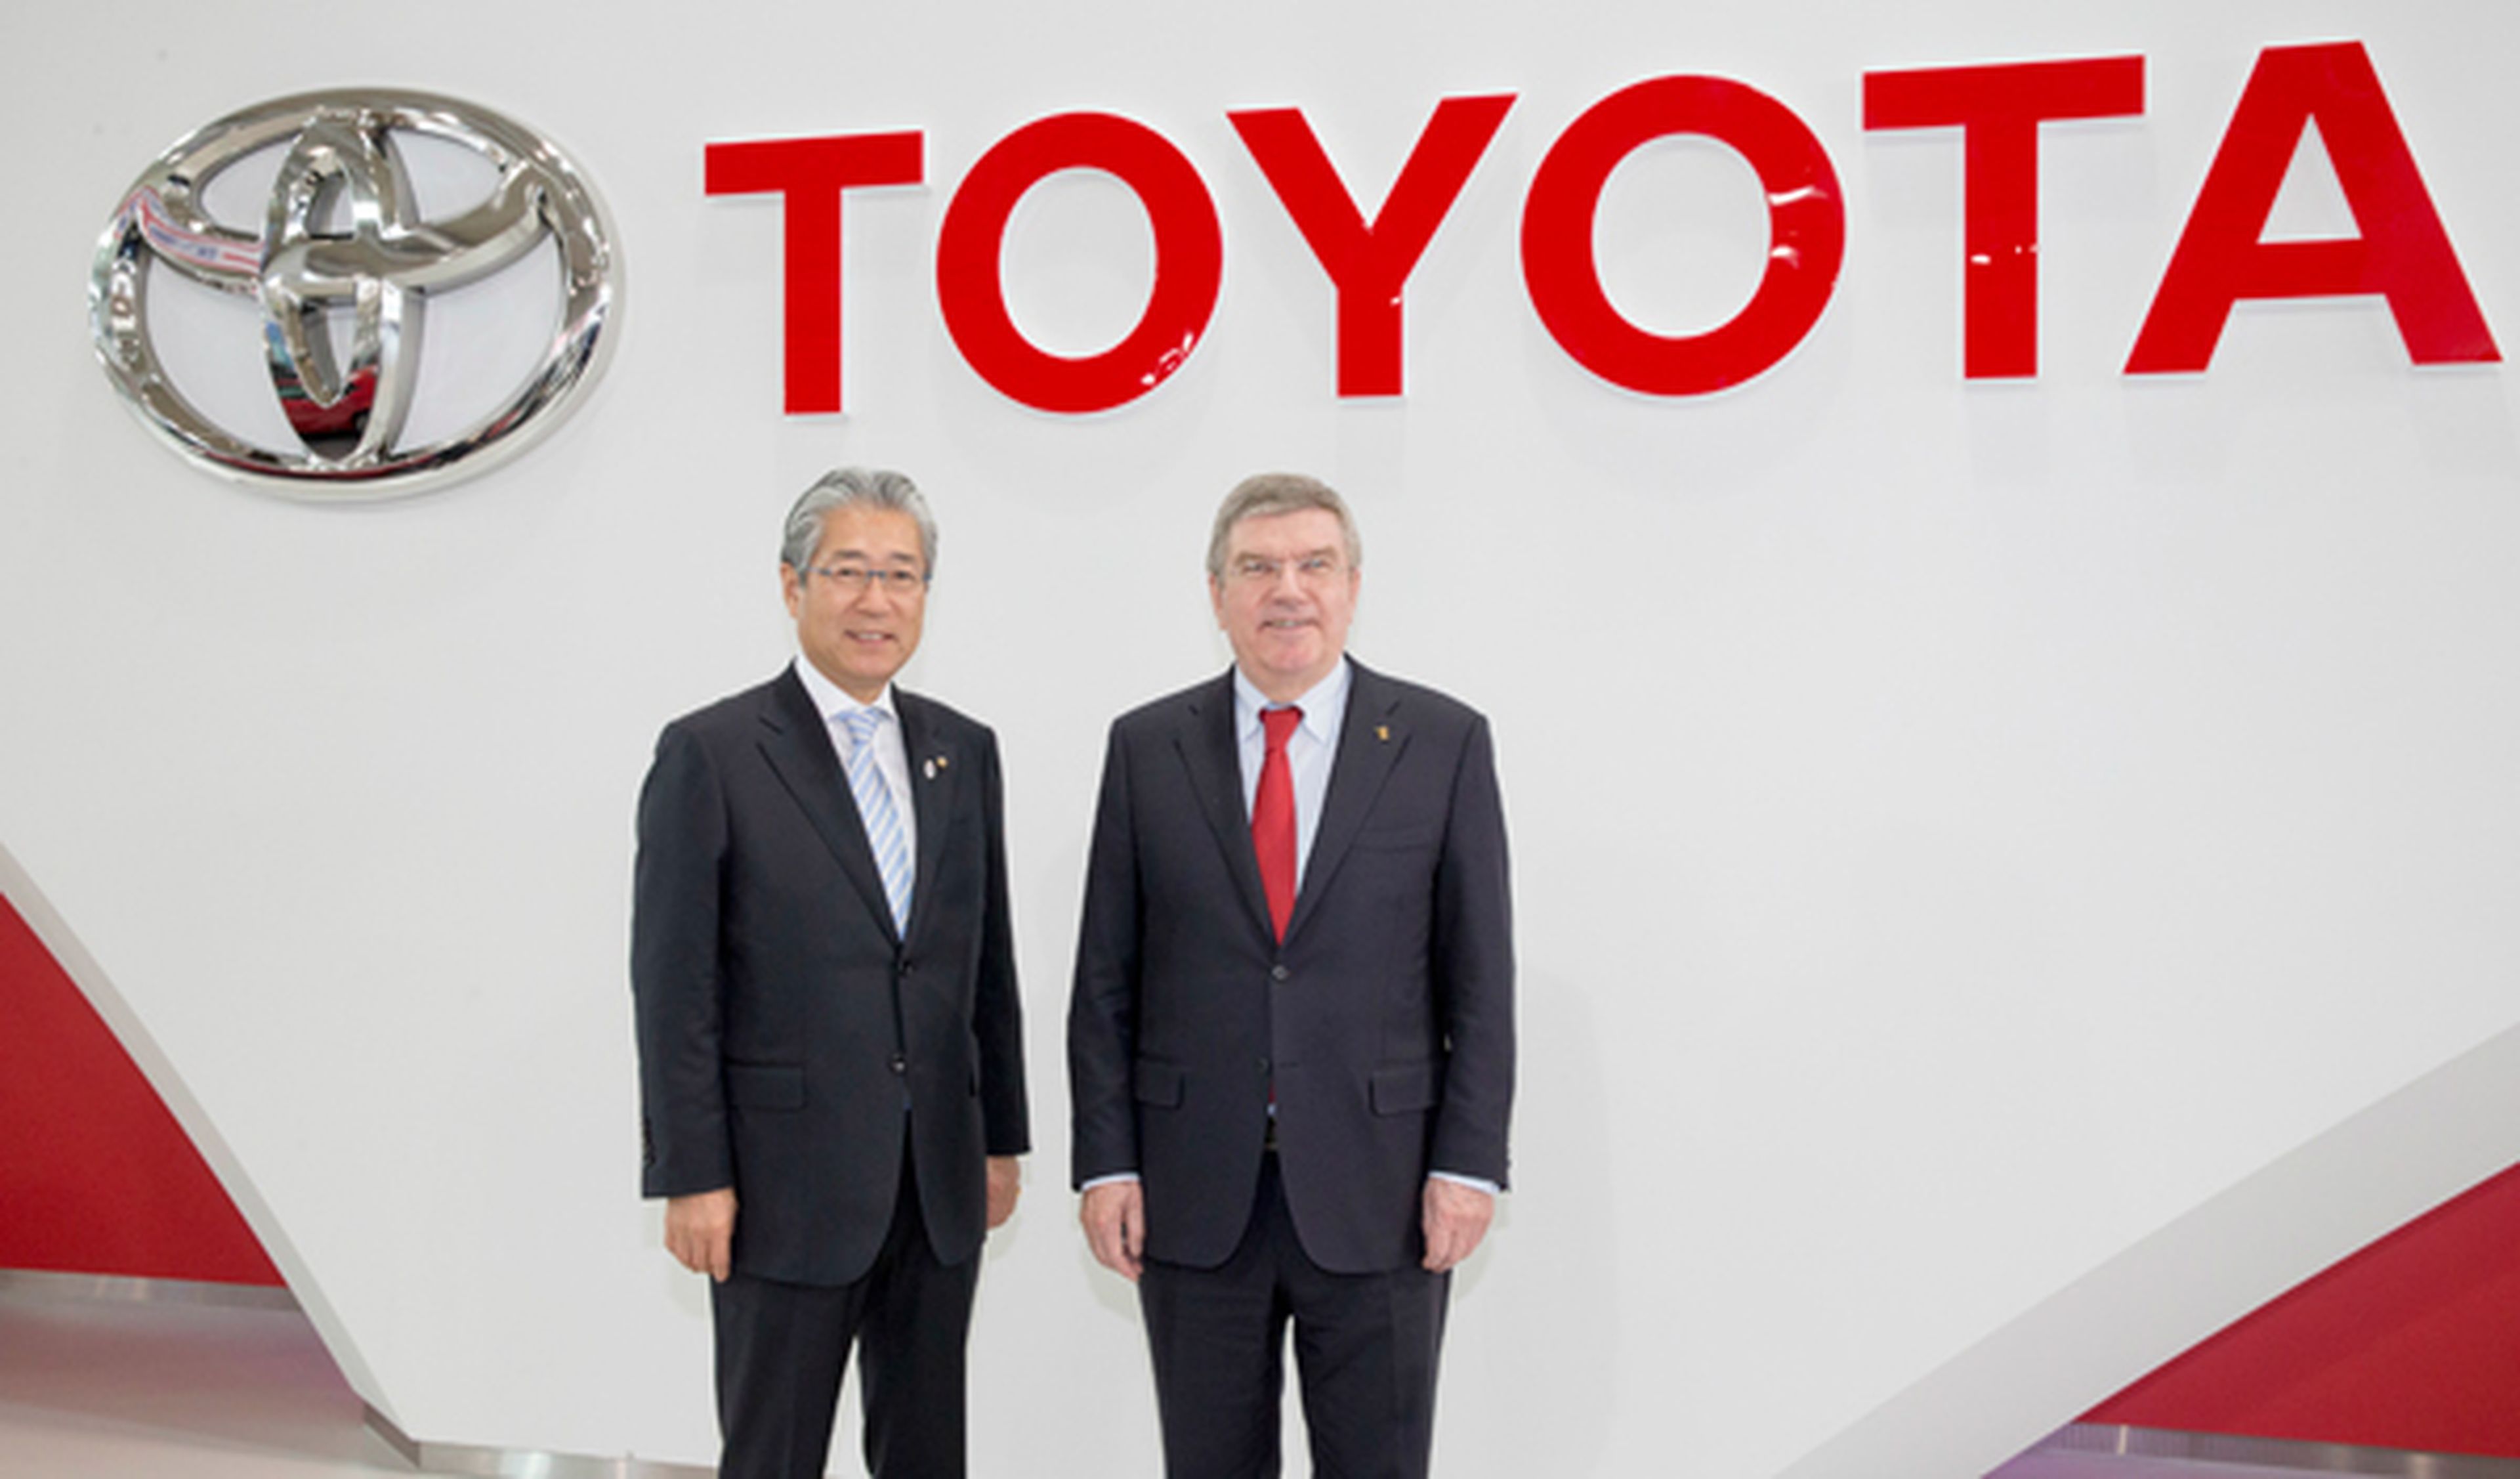 Toyota, socio olímpico del COI hasta 2024